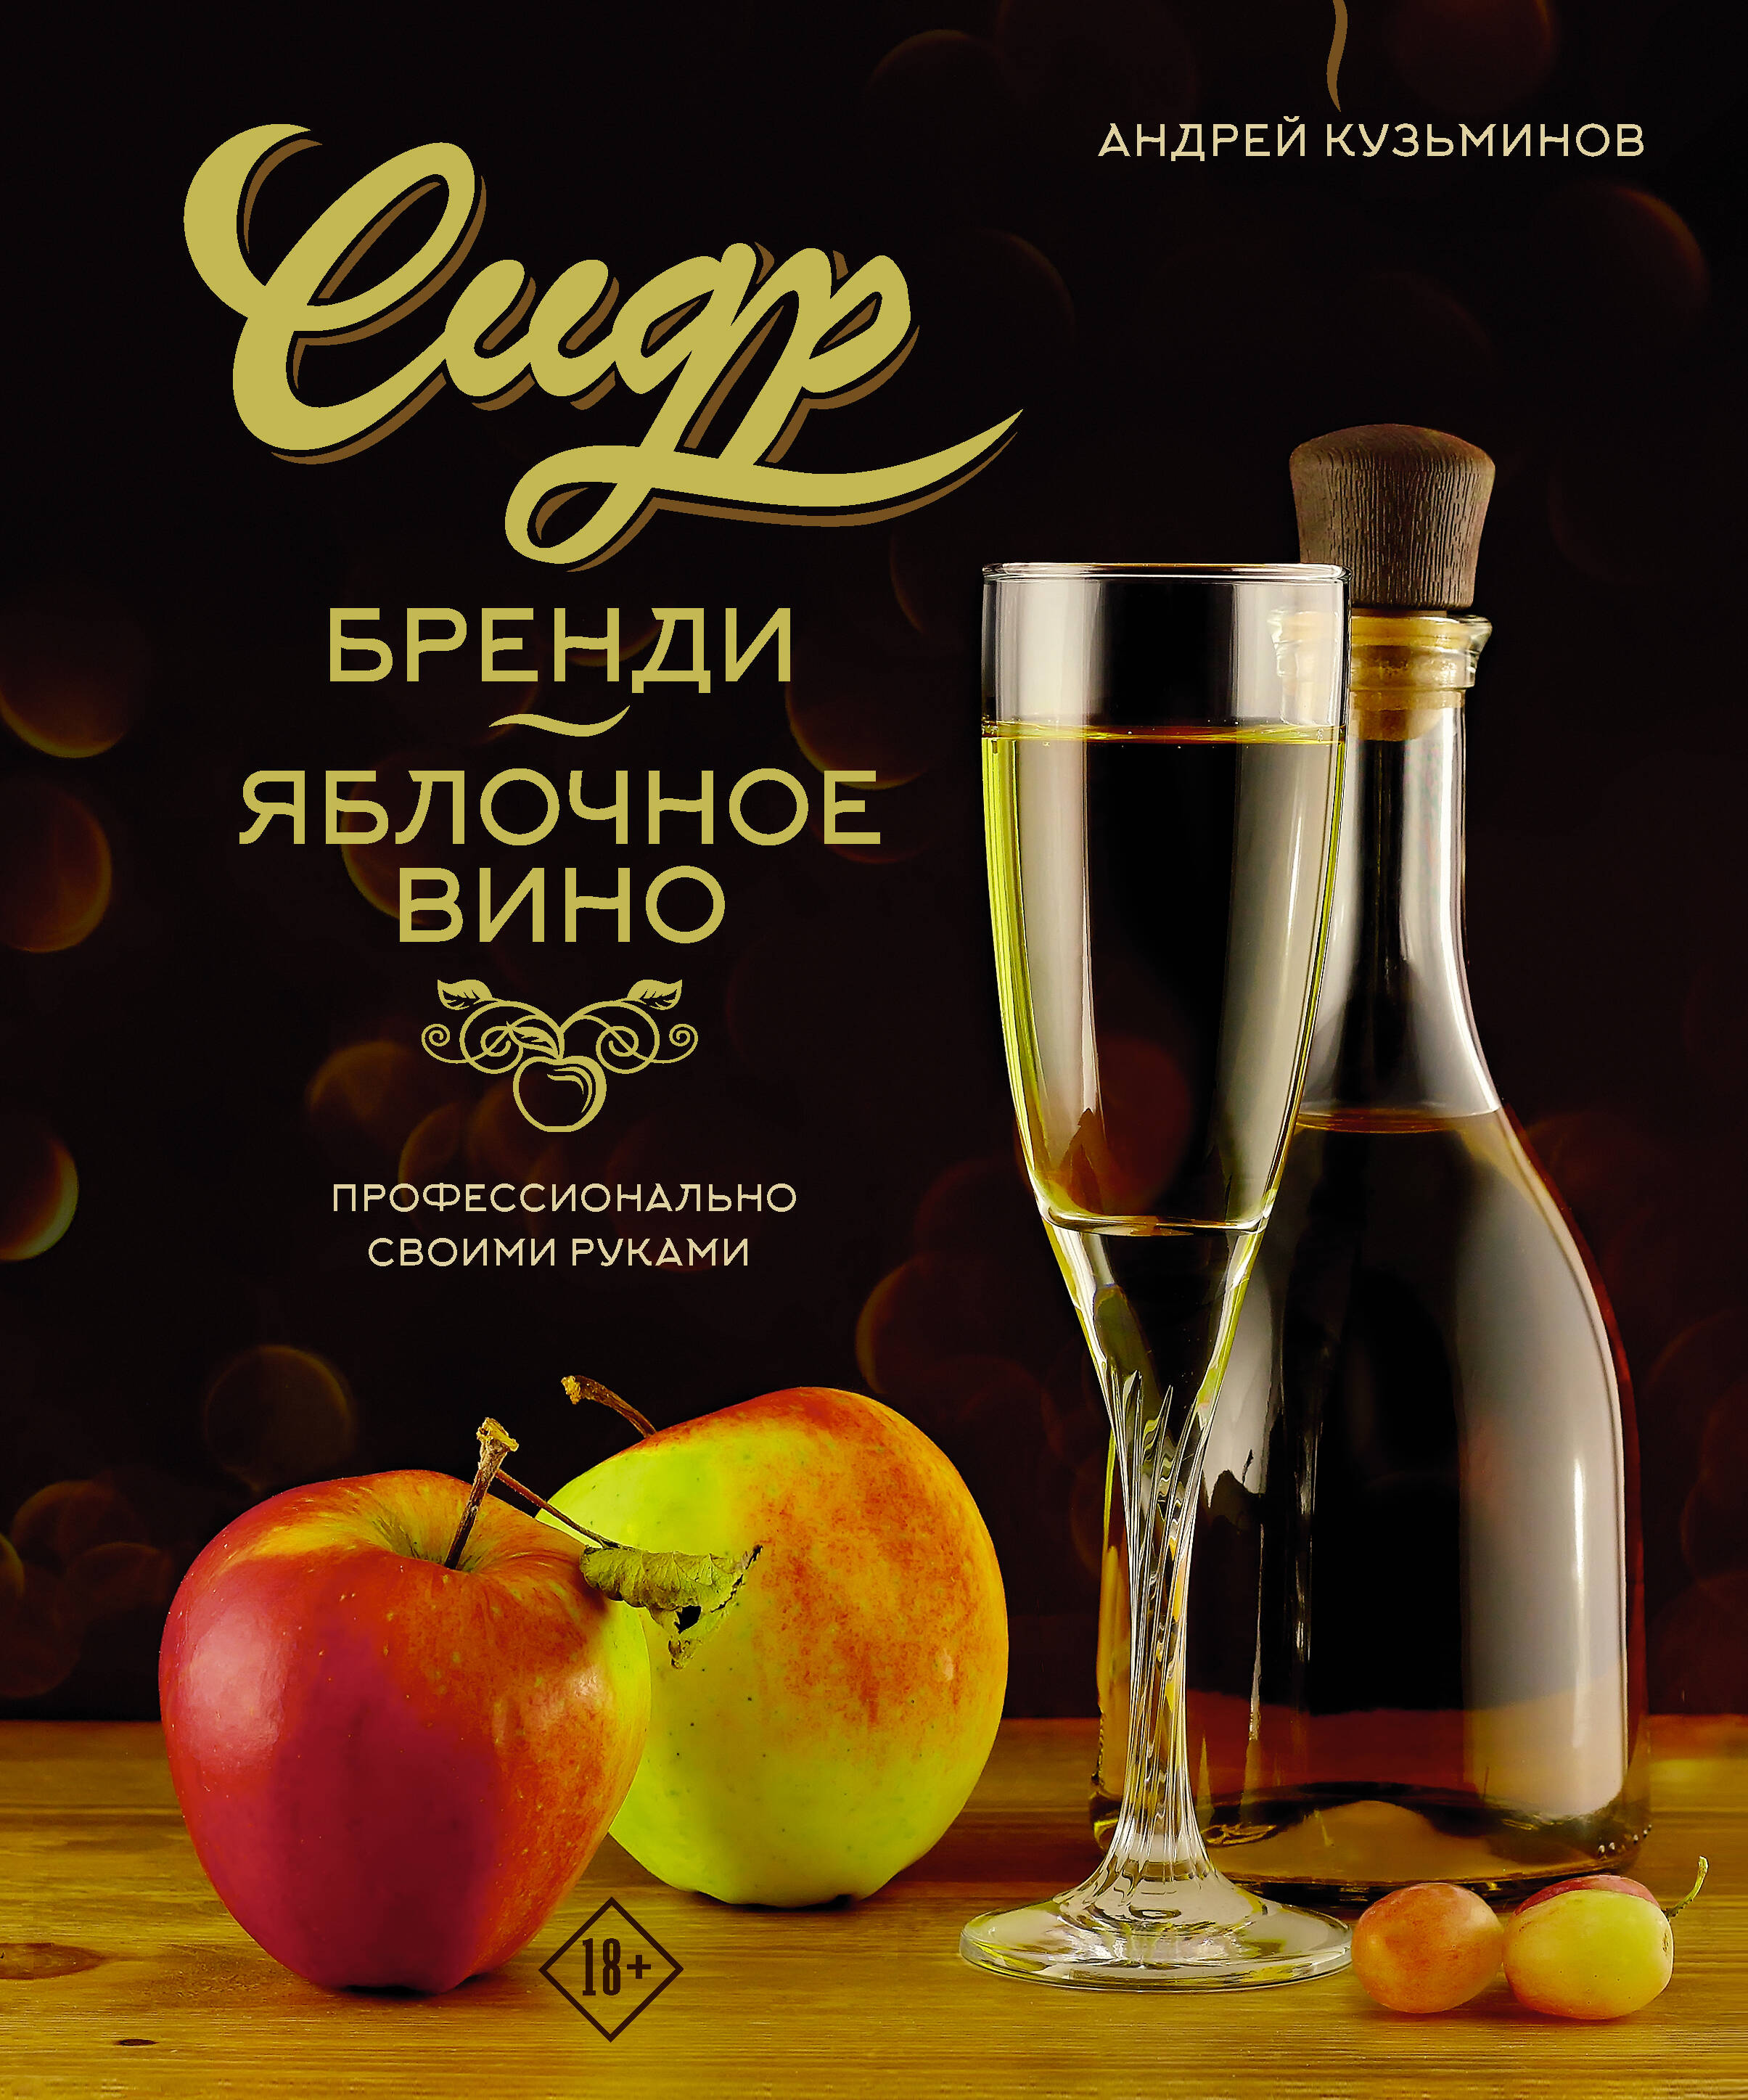 Кузьминов Андрей Игоревич - Сидр, бренди, яблочное вино. Профессионально. Своими руками